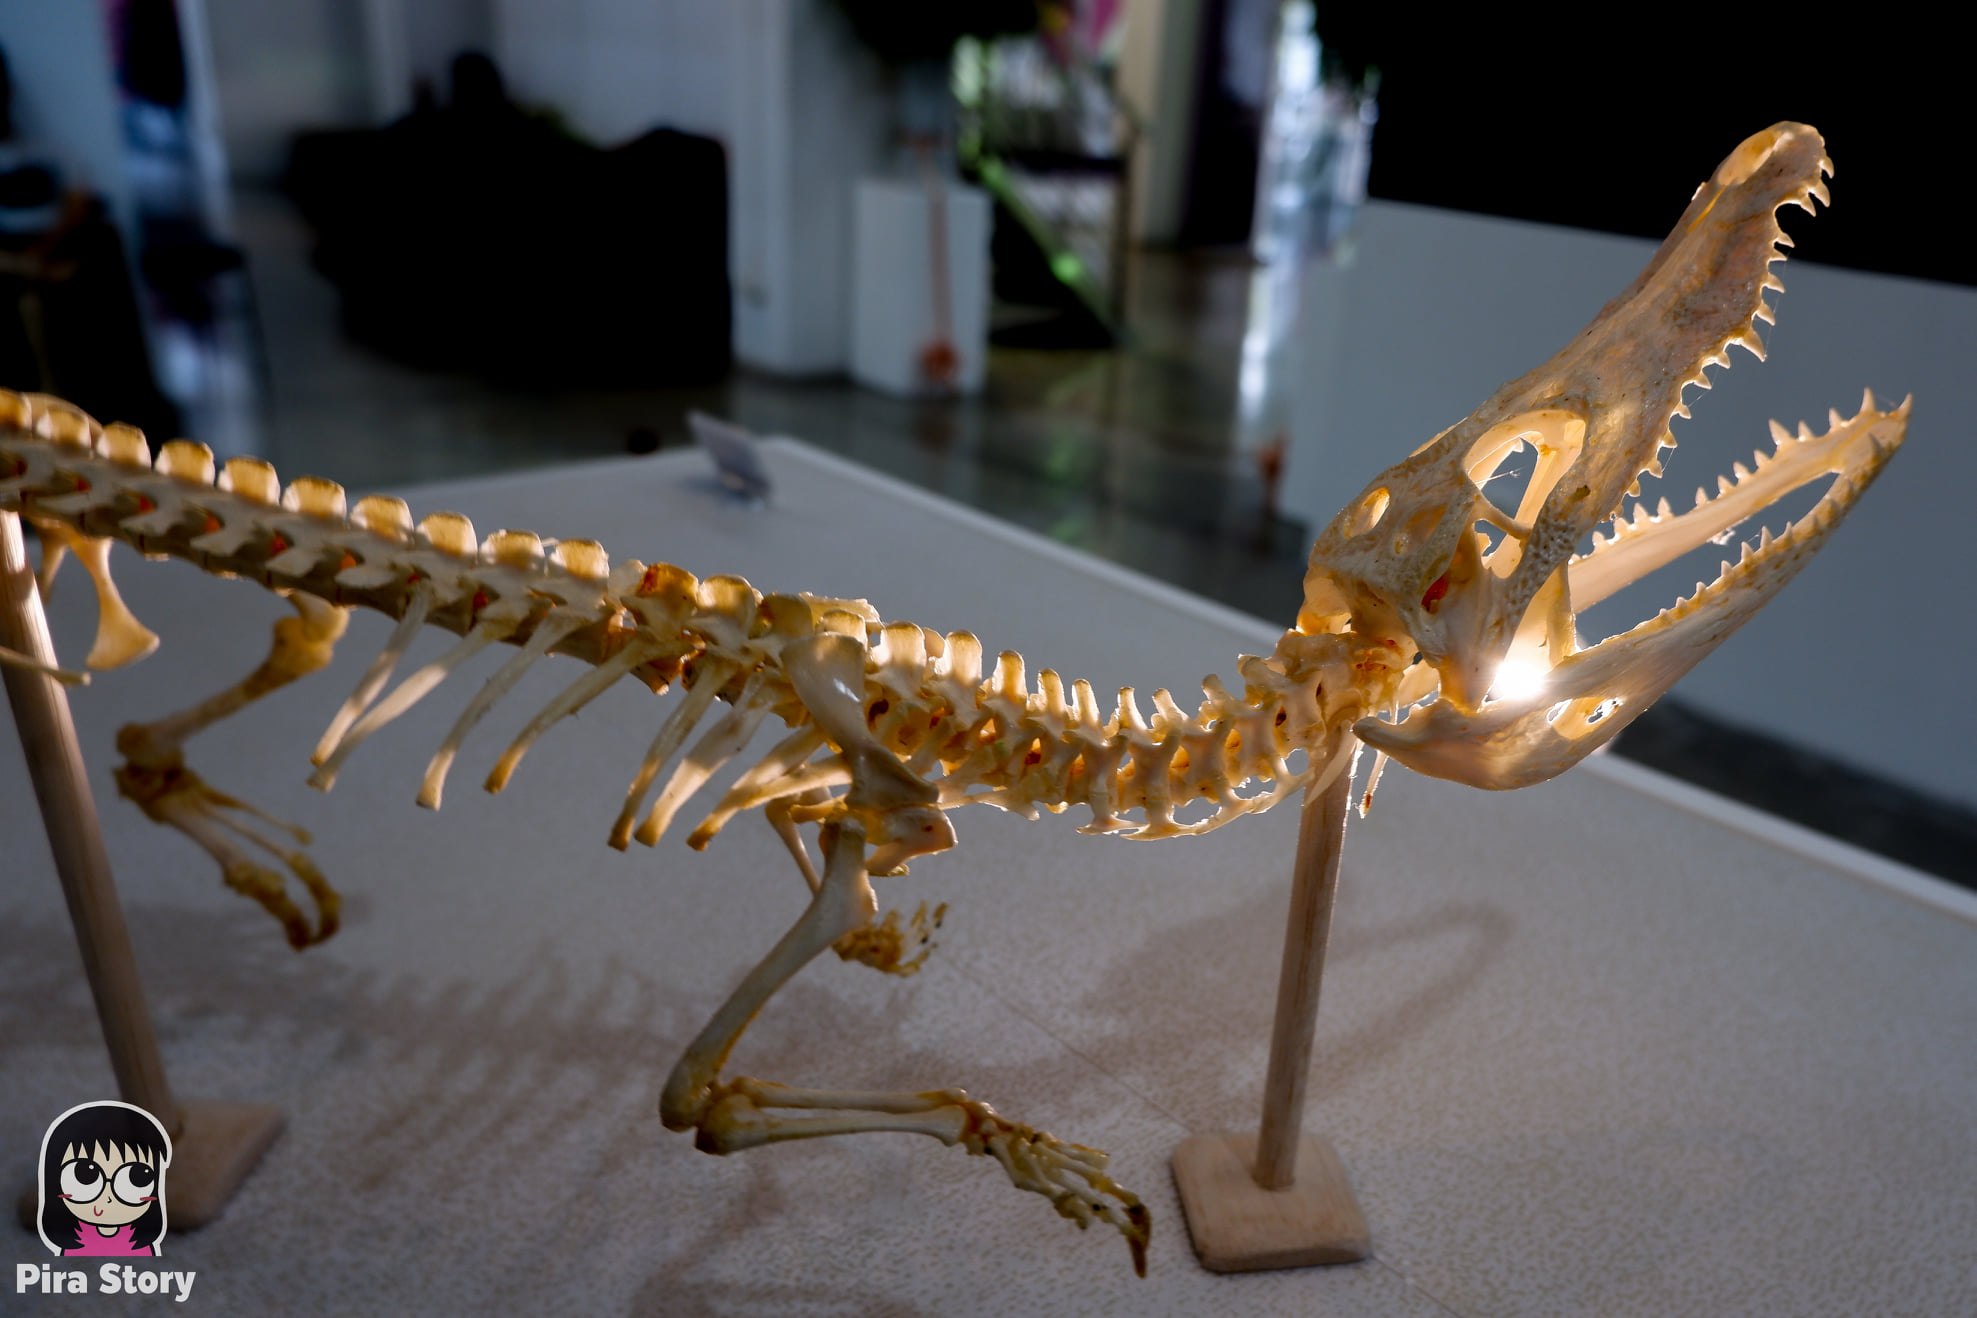 ความลับของโครงกระดูก Skeleton's Secrets ศึกษากายวิภาคสัตว์ ที่พิพิธภัณฑ์ จุฬาลงกรณ์มหาวิทยาลัย คณะวิทยาศาสตร์ ชีววิทยา Night at the museum 2020 เที่ยวพิพิธภัณฑ์ เที่ยวกรุงเทพ สยาม กระดูกสัตว์ กายวิภาคศาสตร์ โครงสร้างร่างกาย โครงสร้างกระดูก สัตว์เลี้ยงลูกด้วยนม สัตว์มีกระดูกสันหลัง กระดูกจระเข้ ตะโขง จระเข้ อัลลิเกเตอร์